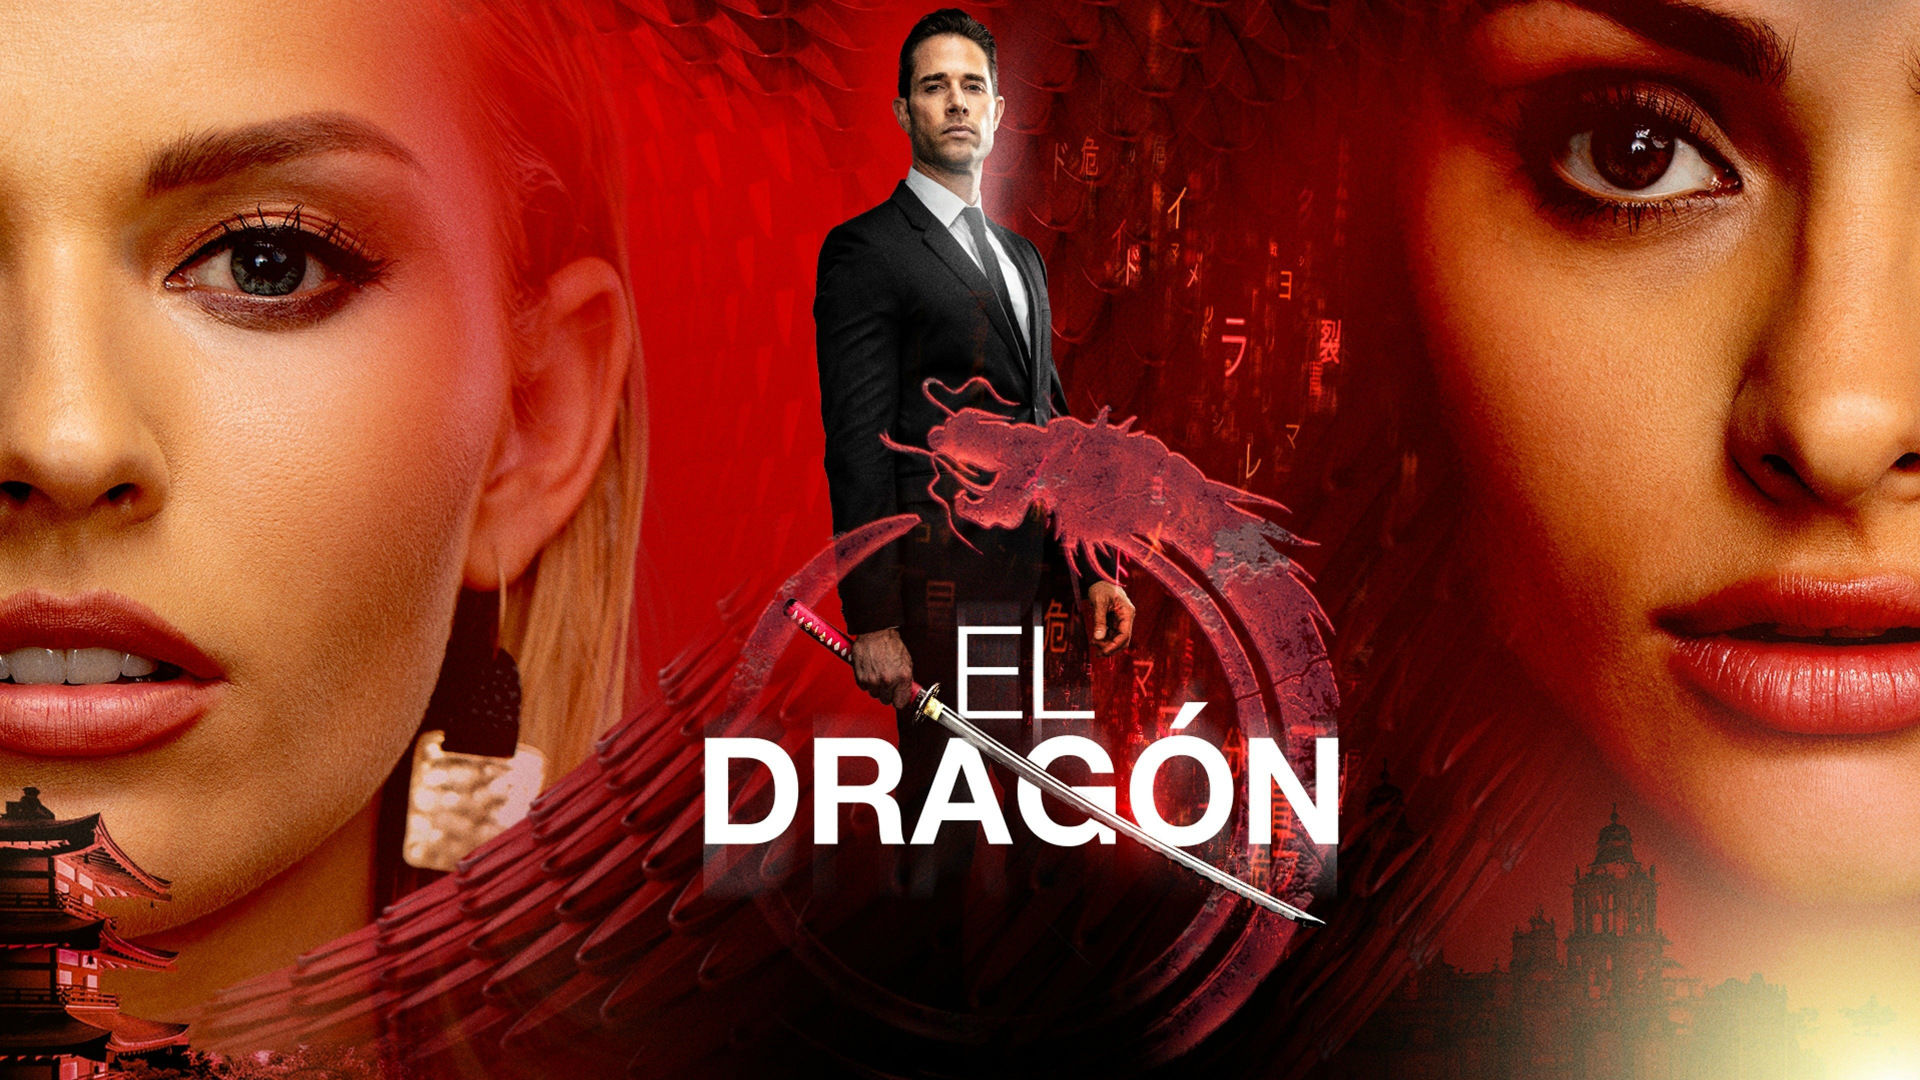 El Dragón: Return of a Warrior Image #543903 TVmaze.